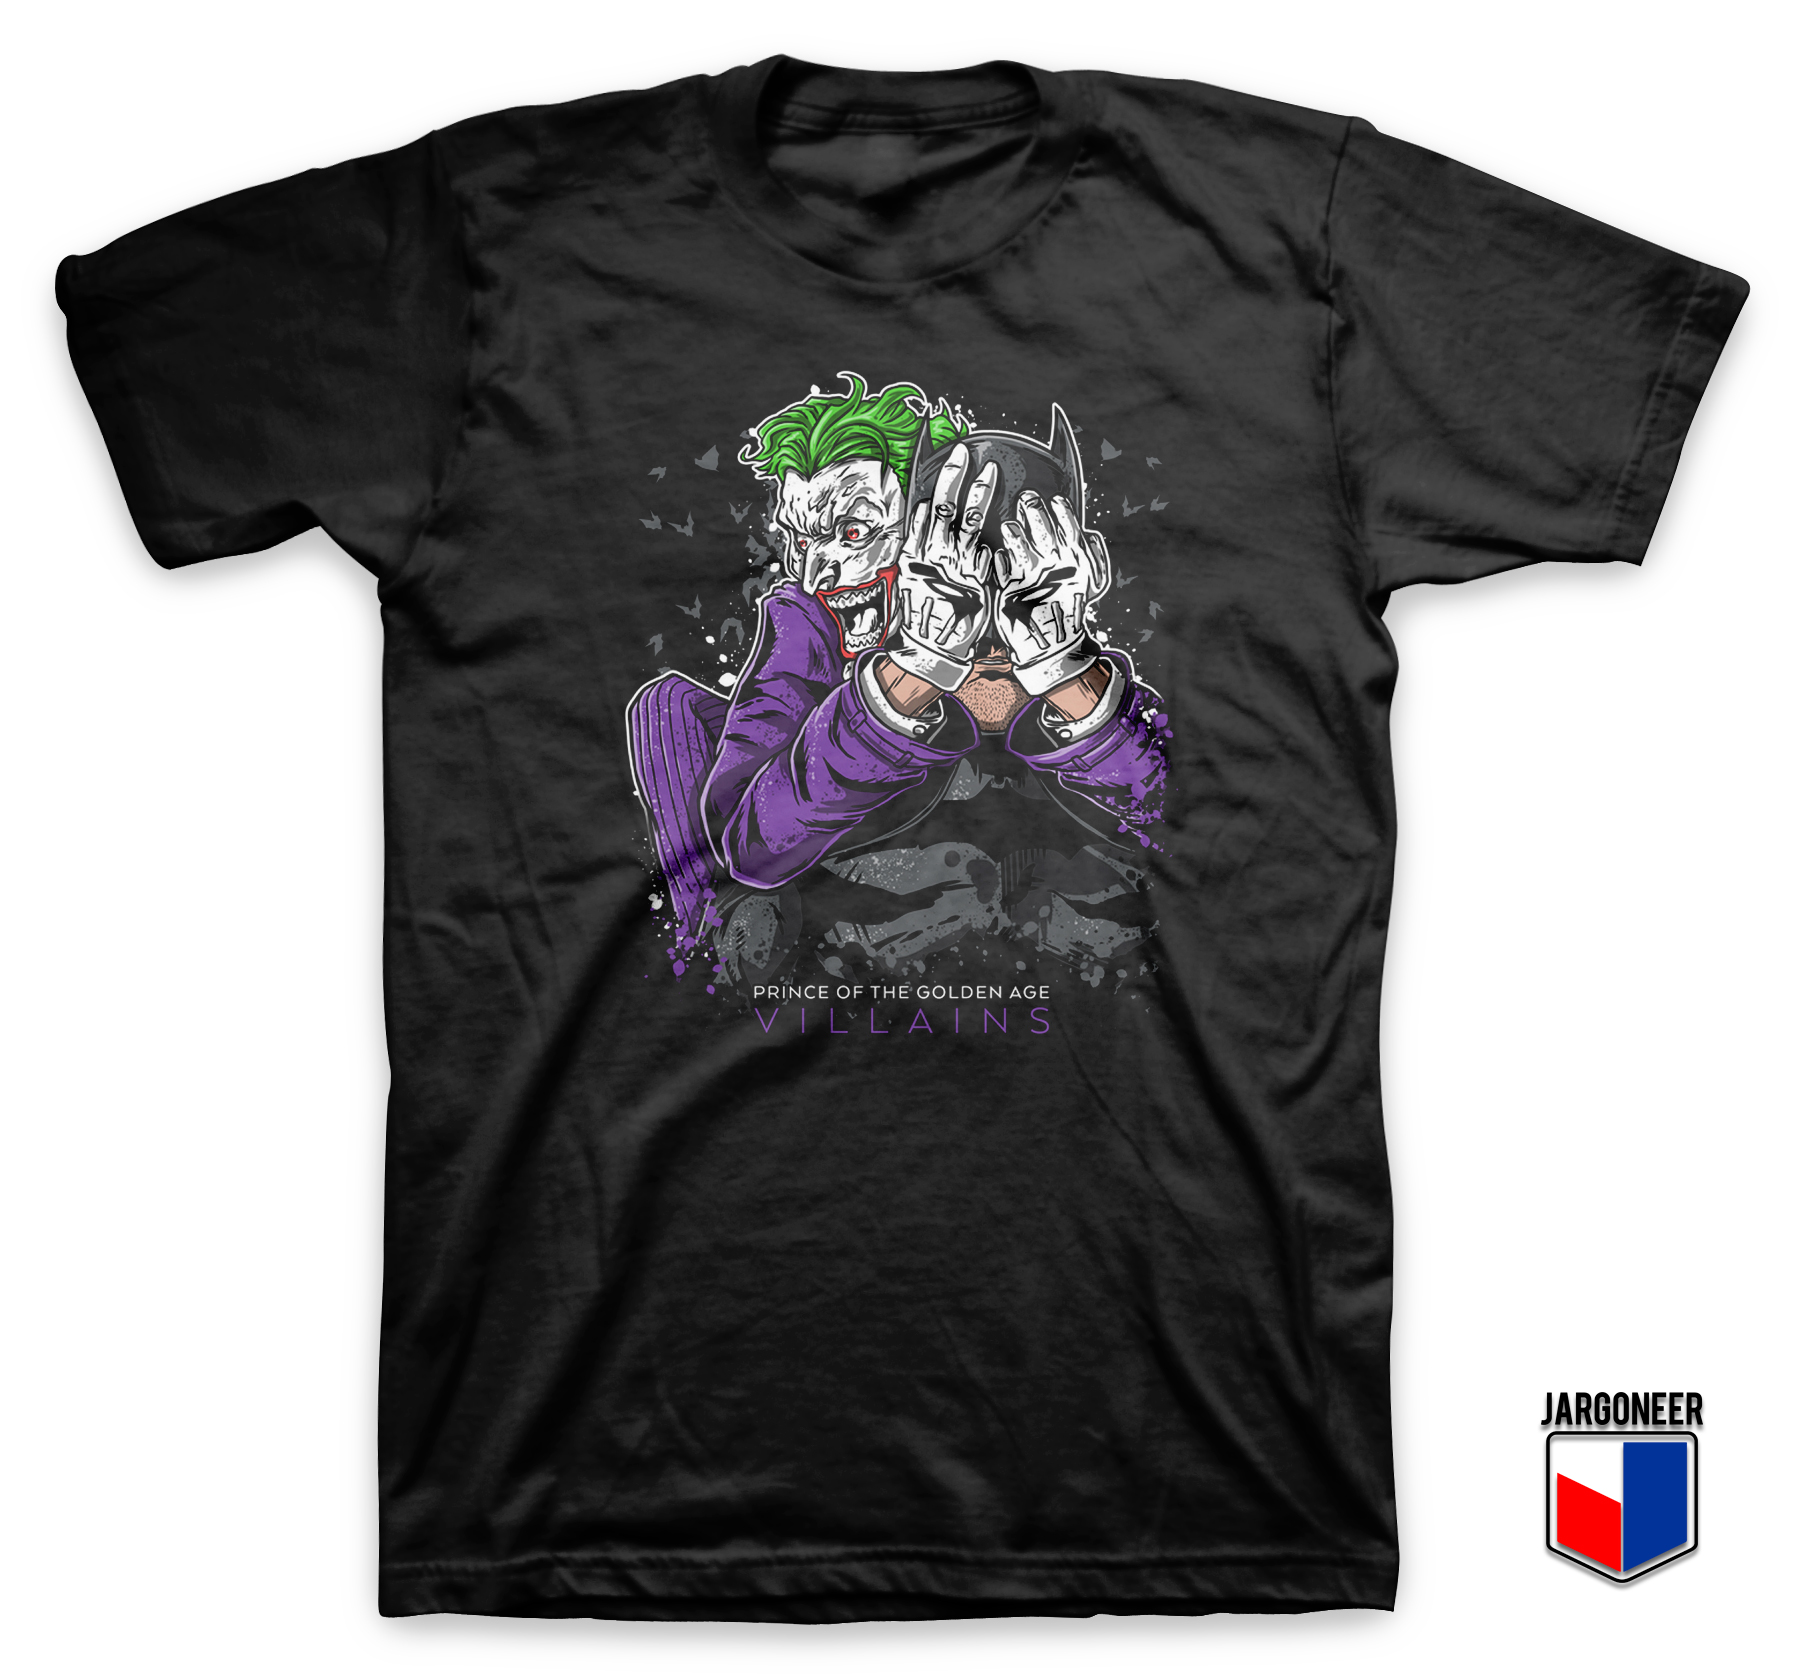 Cool The Bat Joker T Shirt Design - Shop Unique Graphic Cool Shirt Designs